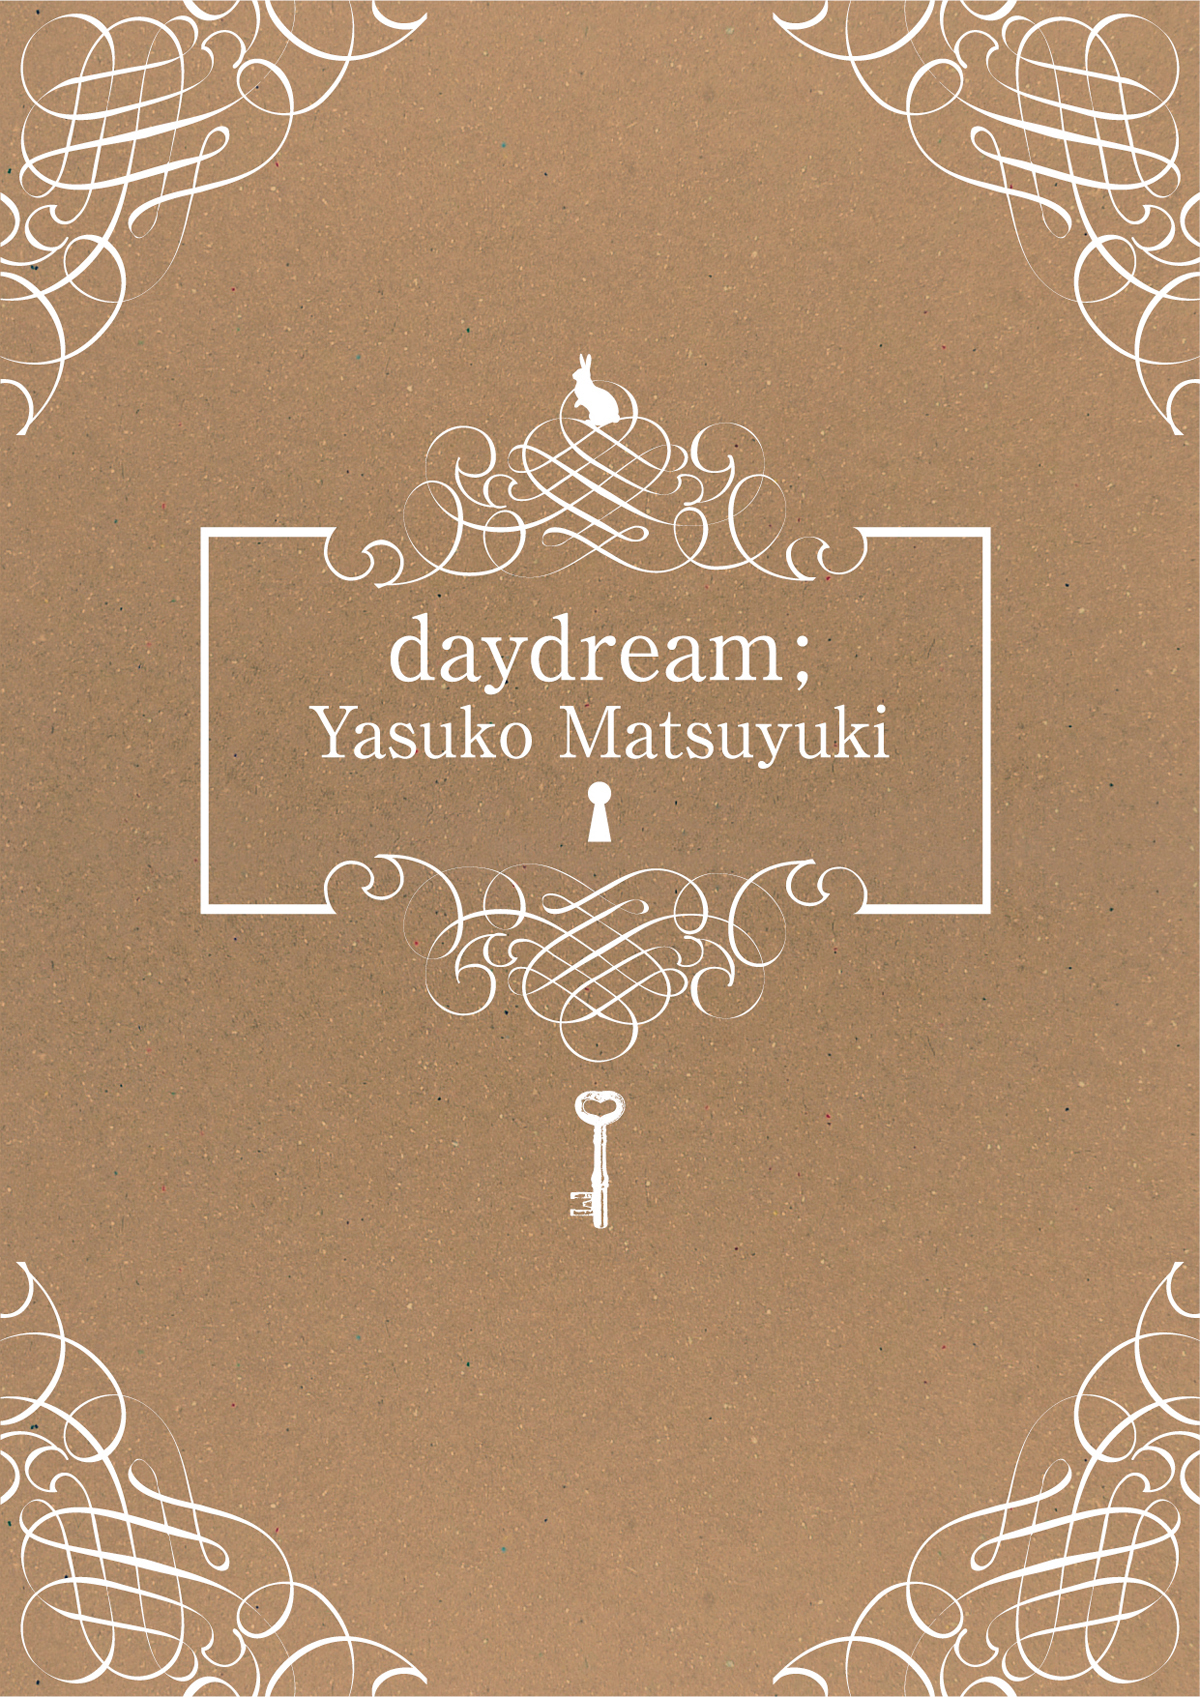 Yasuko Matsuyuki “daydream”